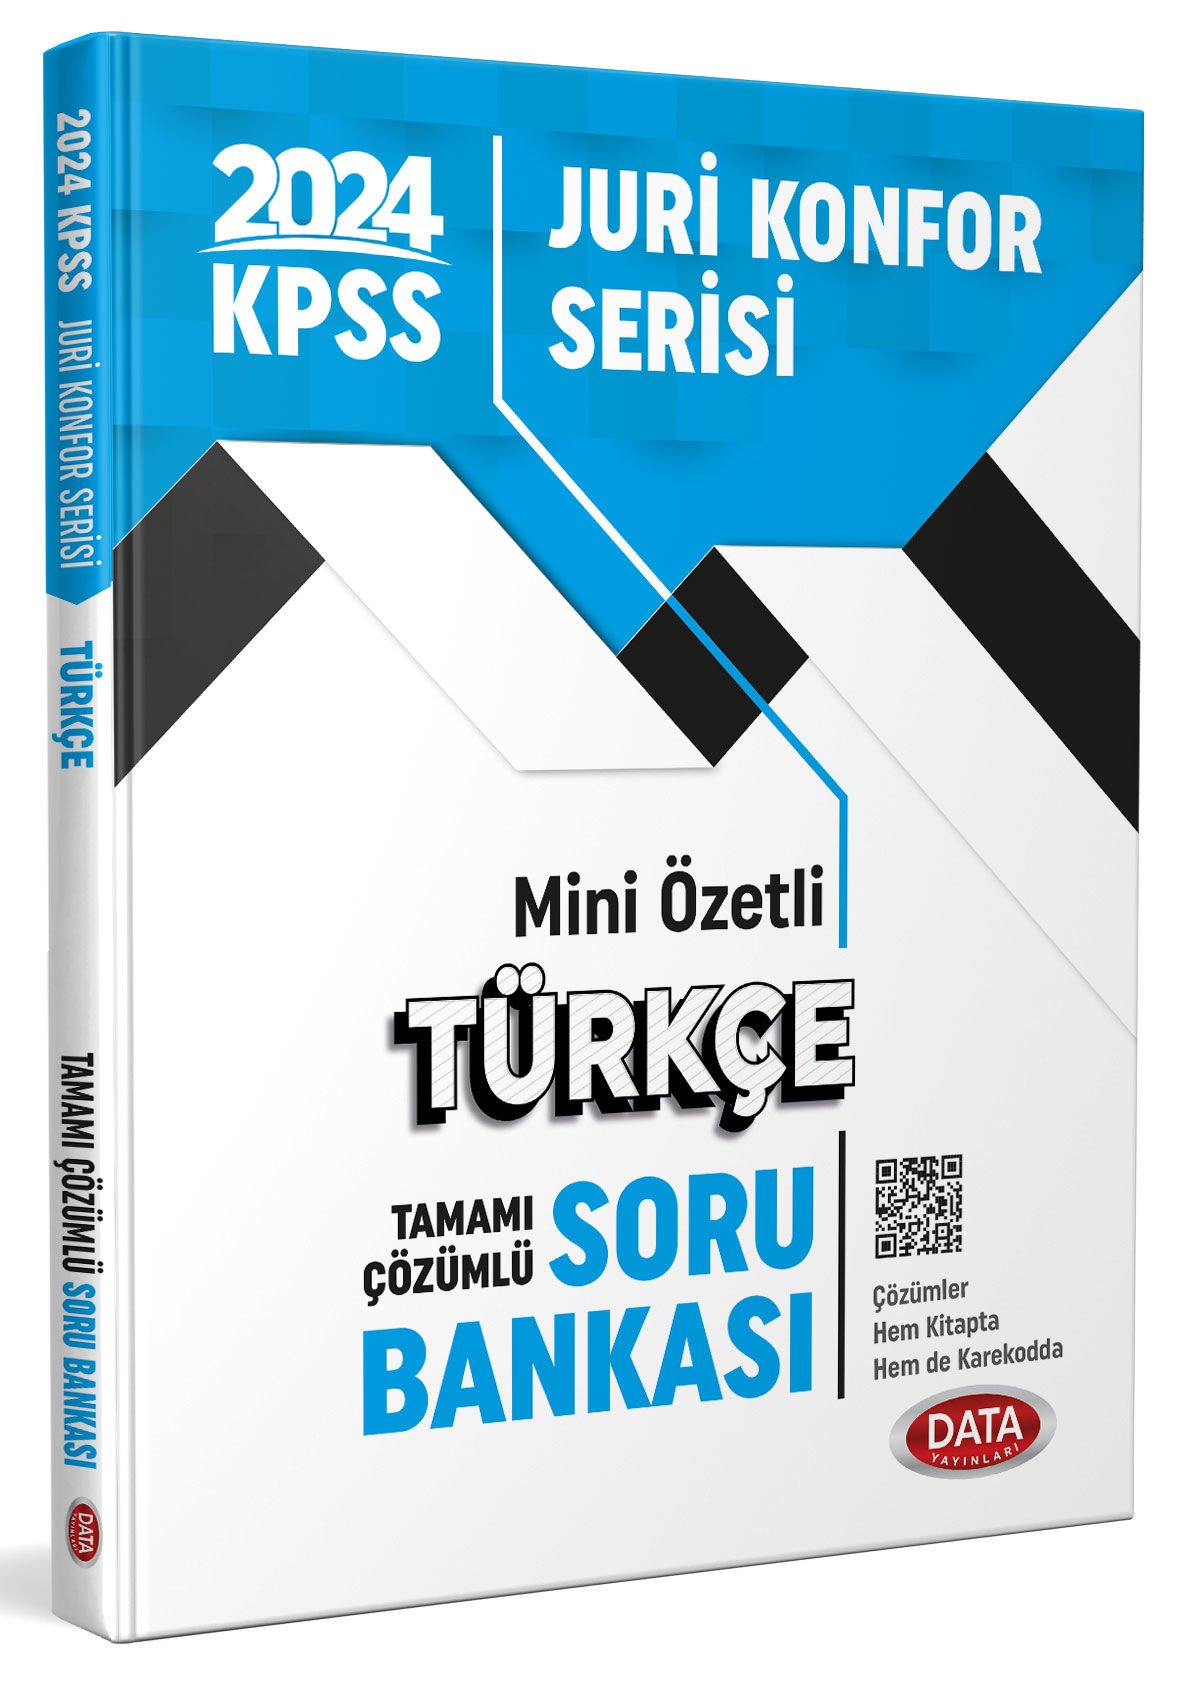 KPSS Jüri Konfor Serisi Türkçe Soru Bankası